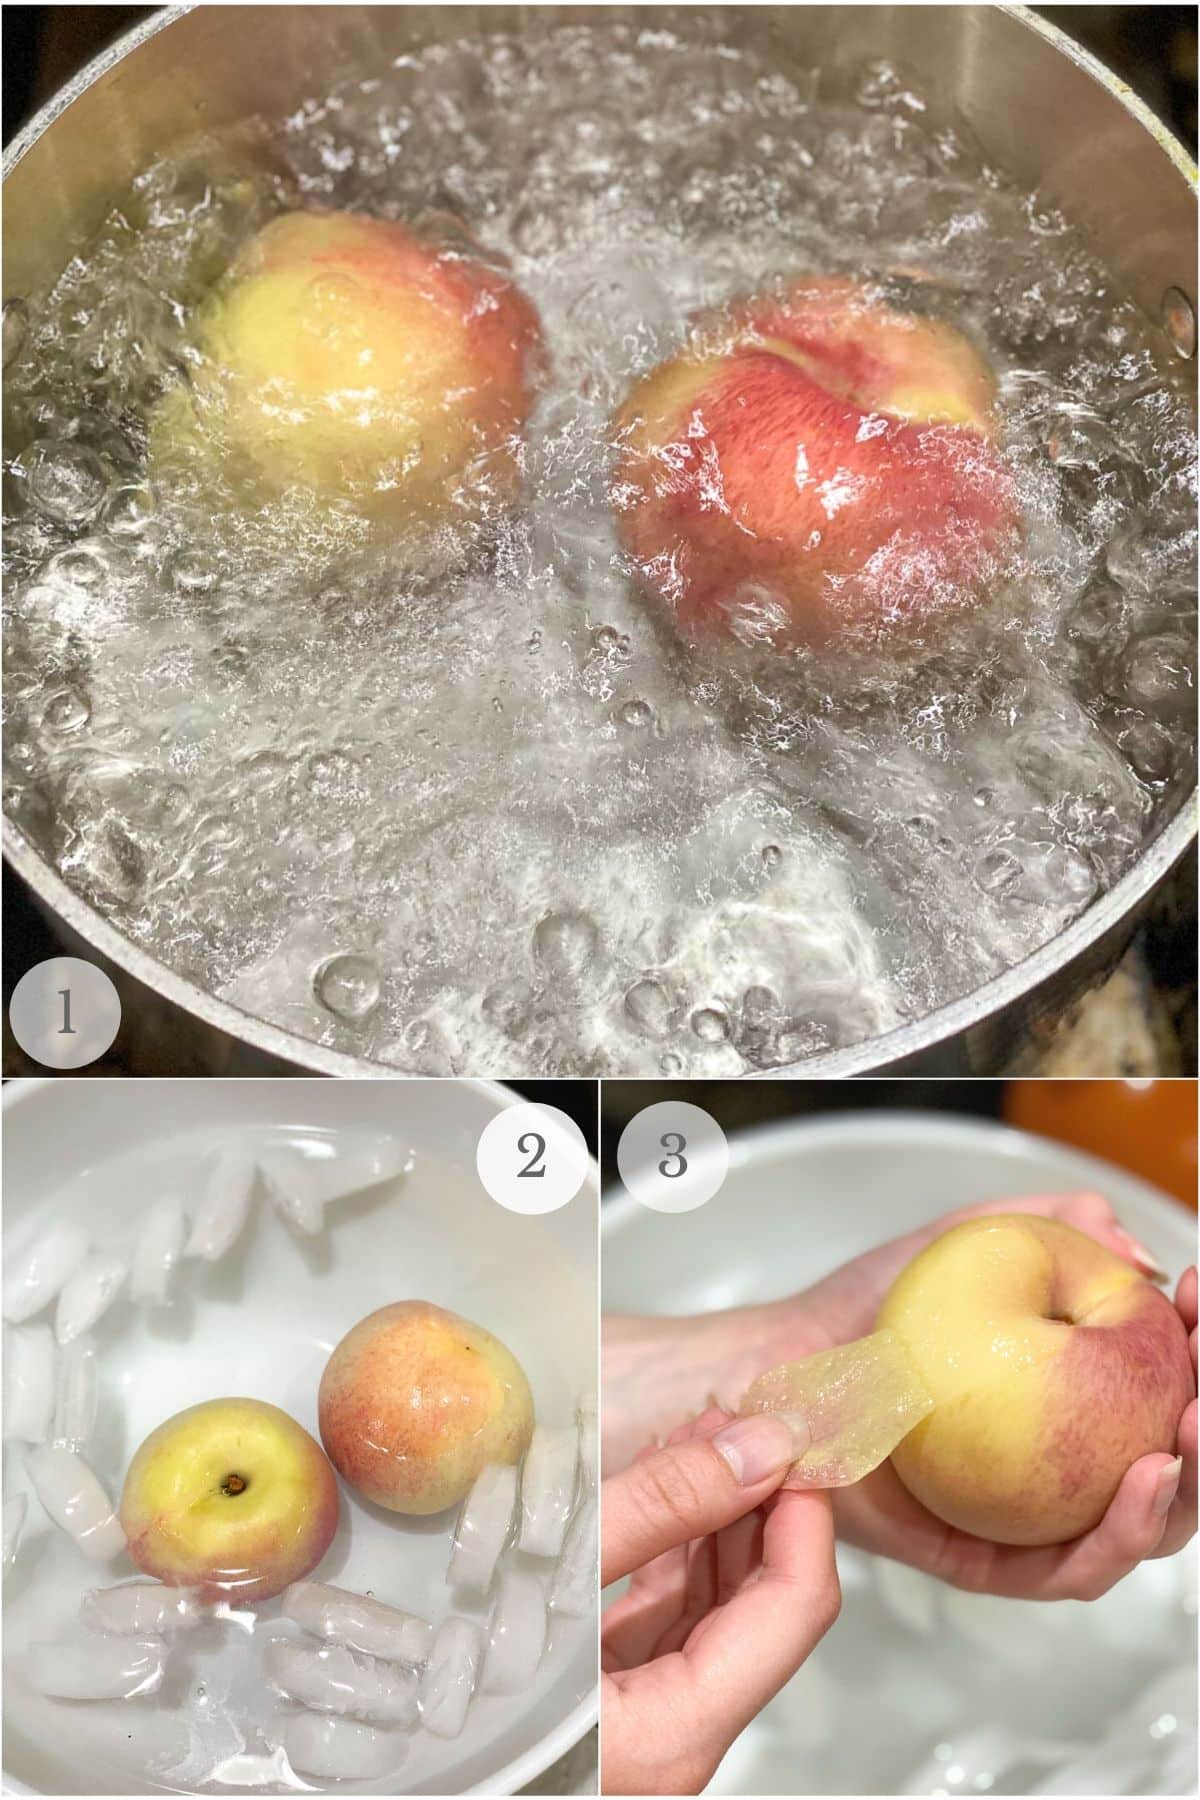 removing peach skin recipe steps.